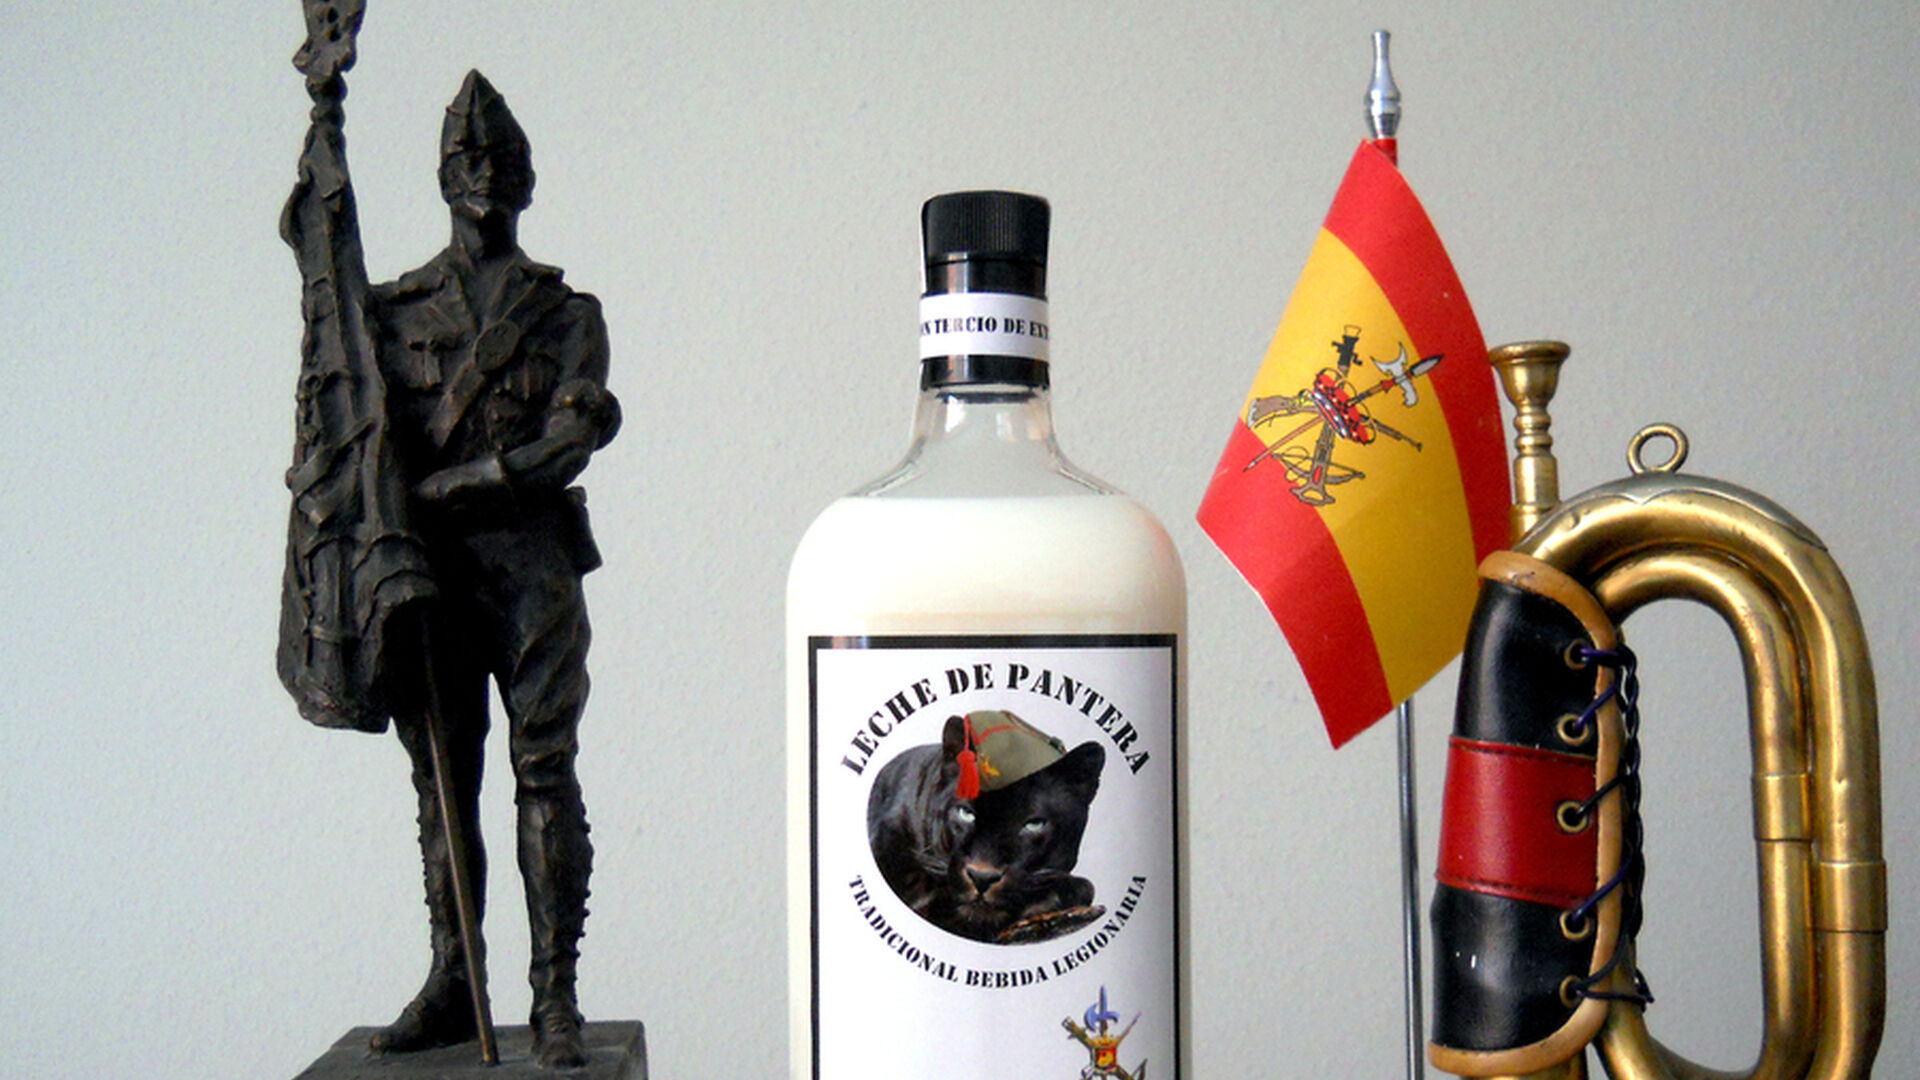 La leche de pantera, la curiosa bebida "made in Huelva"